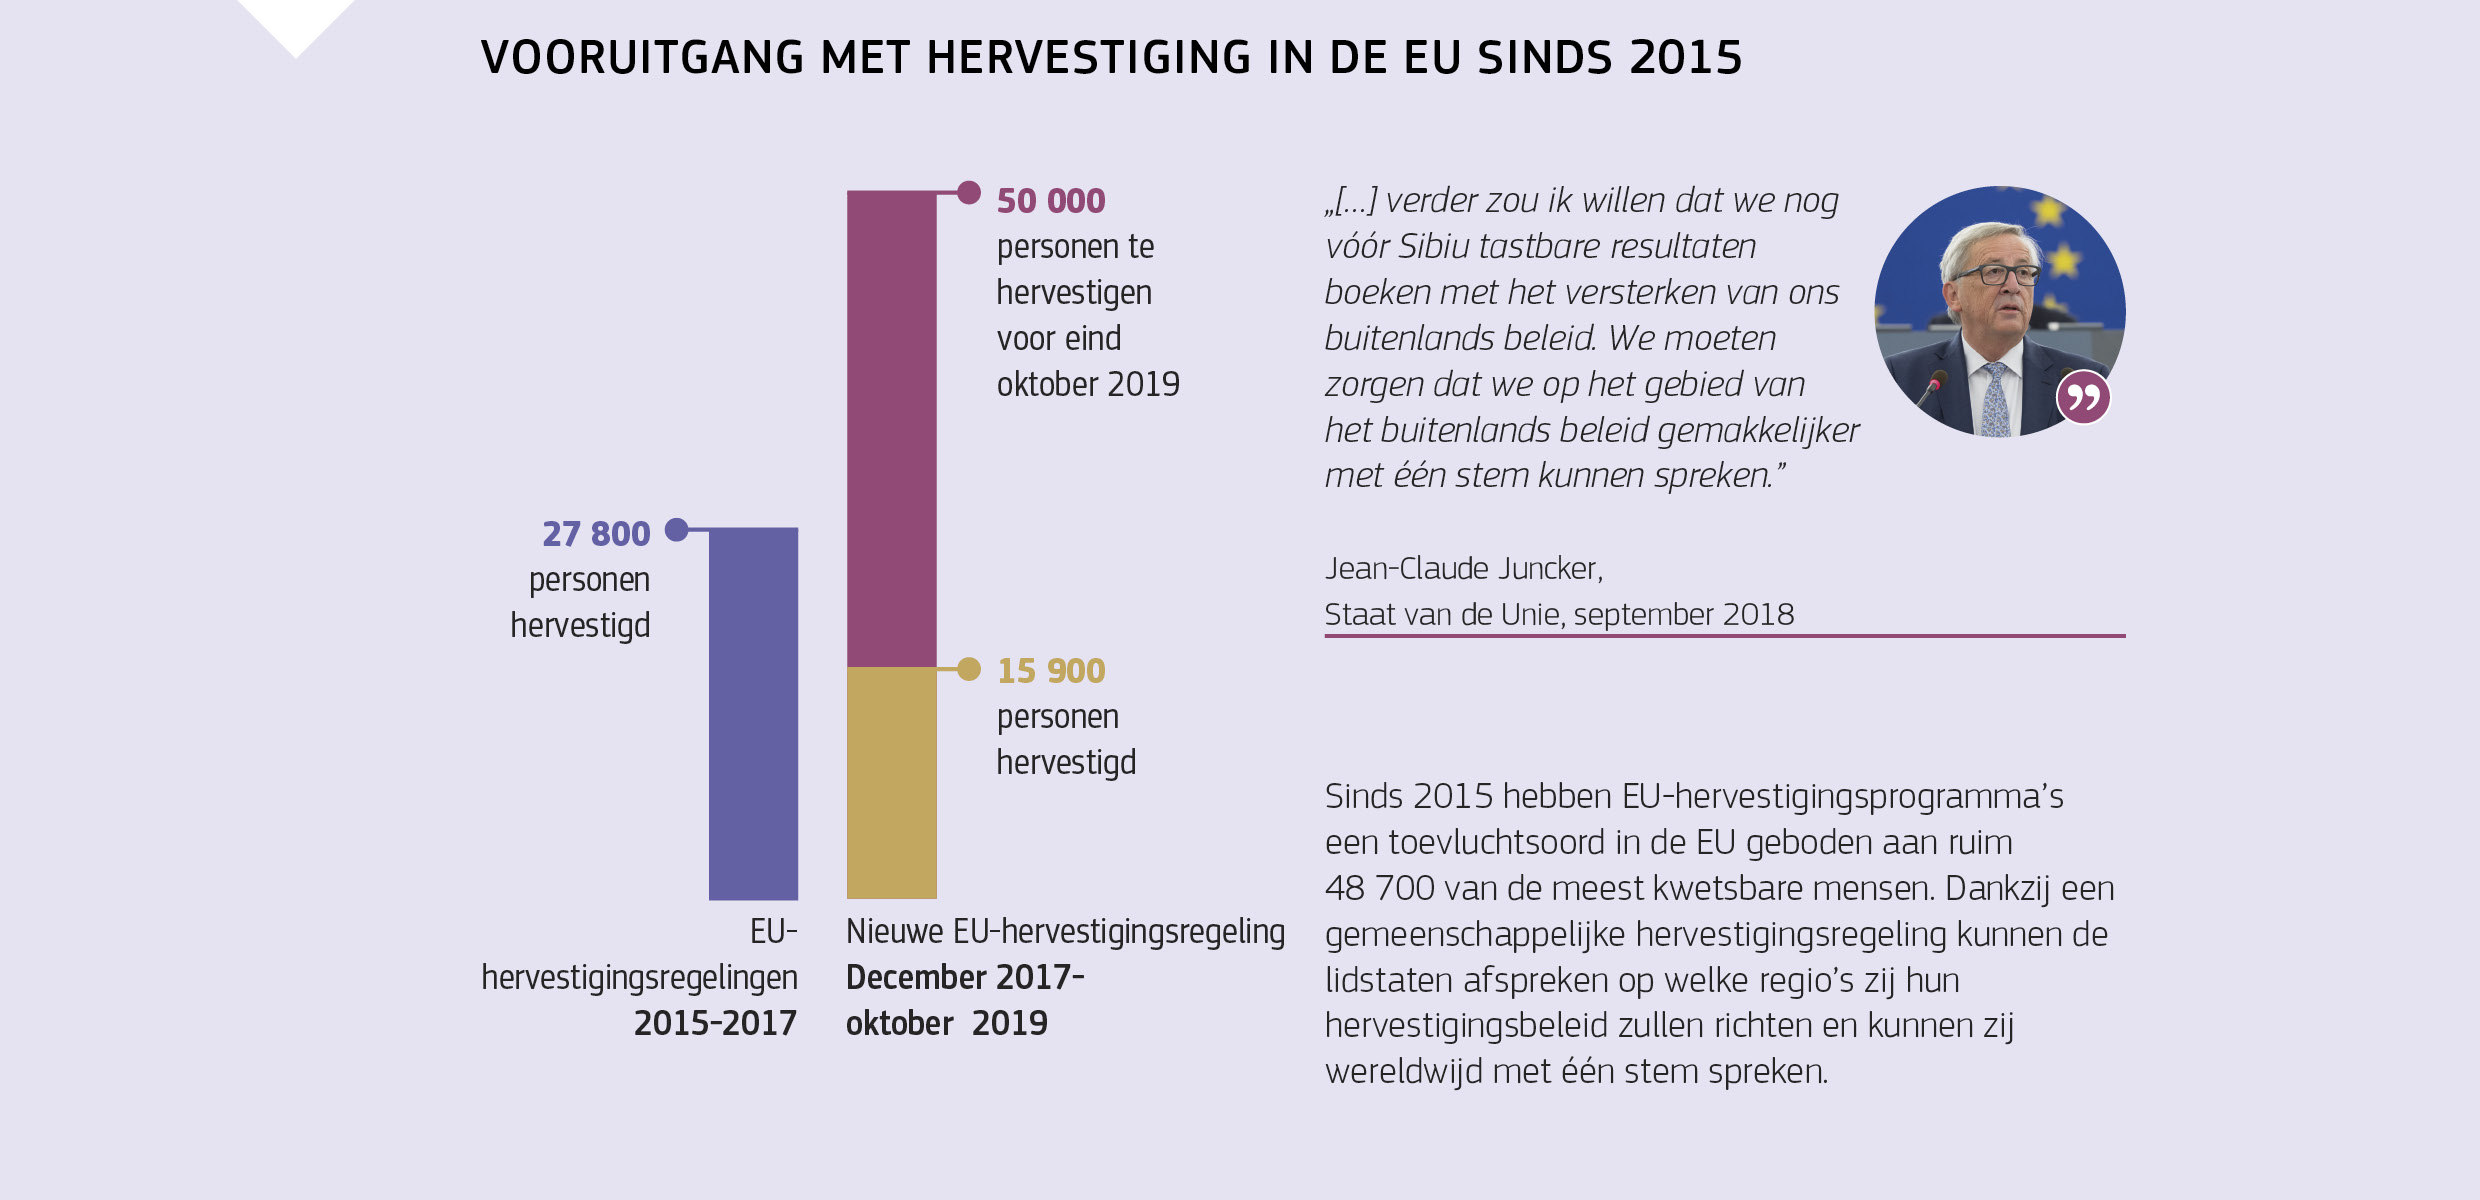 VOORUITGANG MET HERVESTIGING IN DE EU SINDS 2015